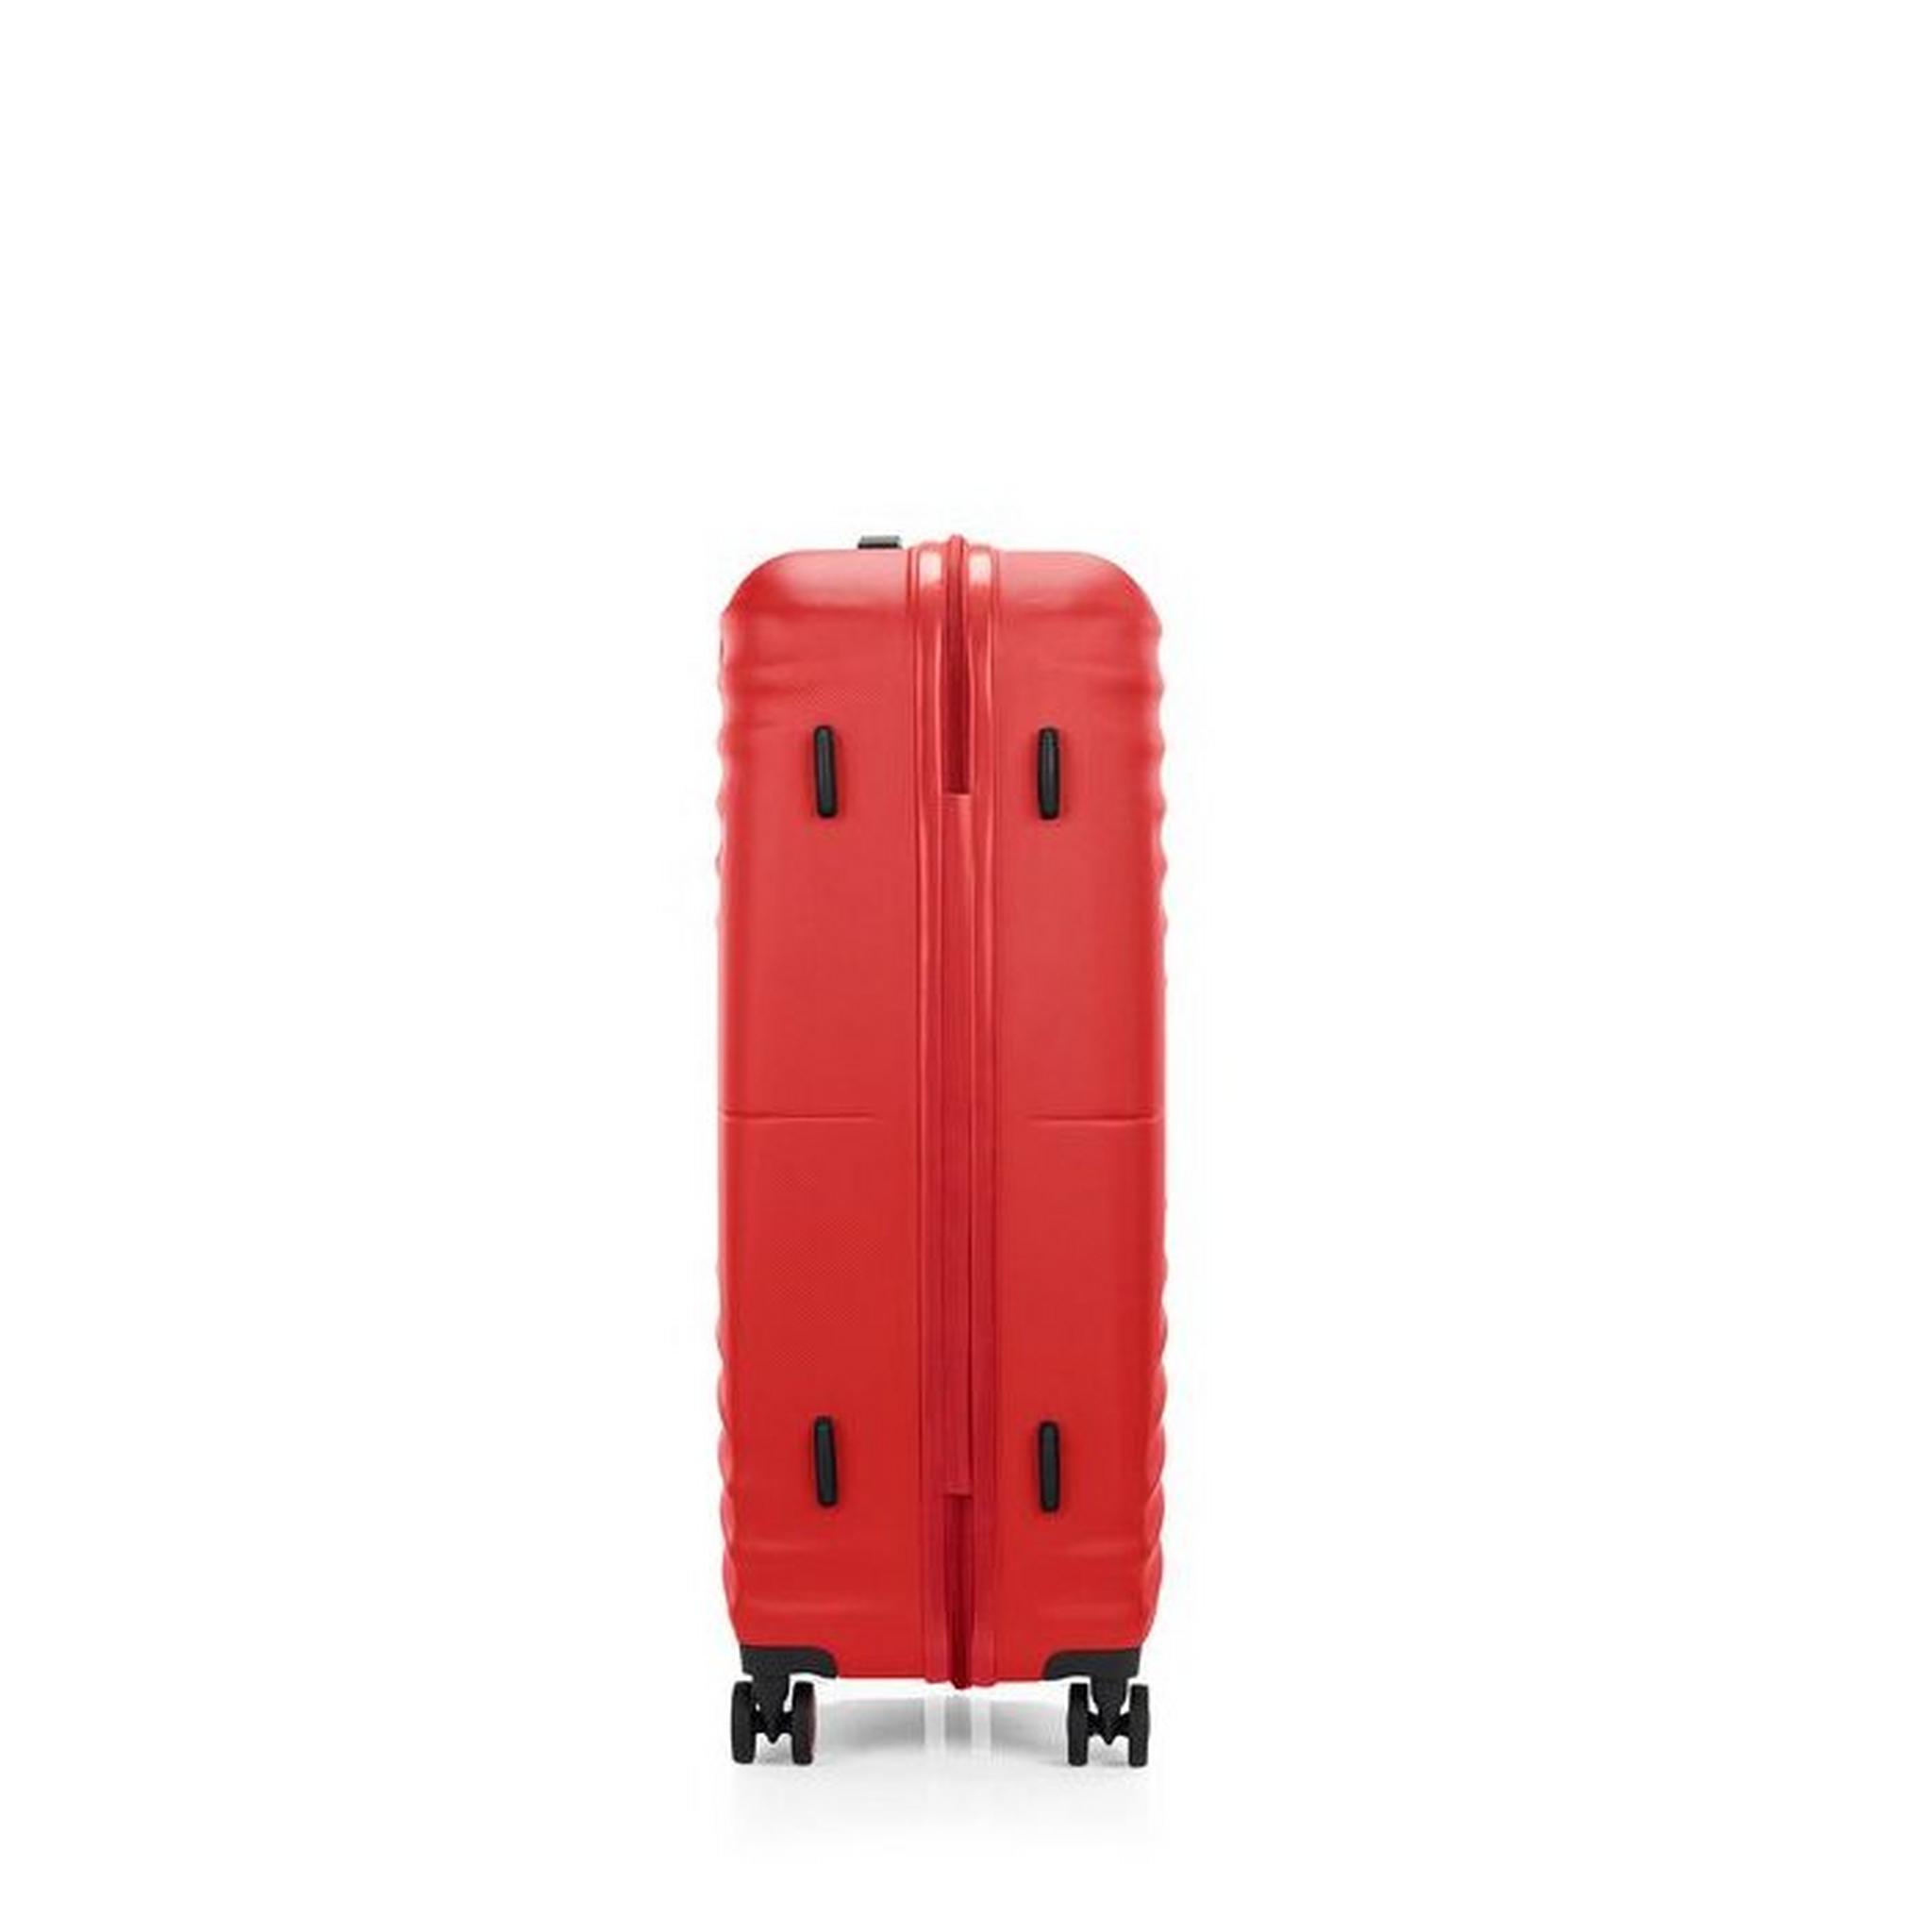 حقيبة سفر تويست ويفز بجوانب صلبة وعجلات دوارة  88 سم، QC6X00009 - أحمر فيفيد